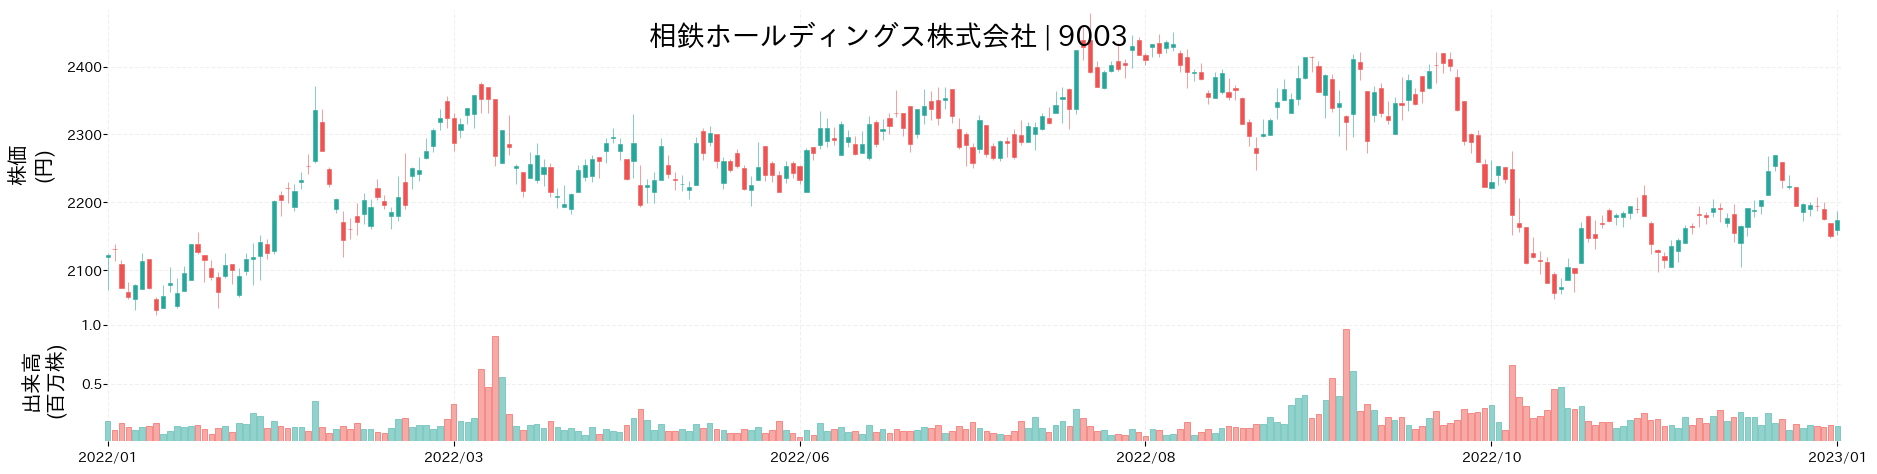 相鉄ホールディングスの株価推移(2022)